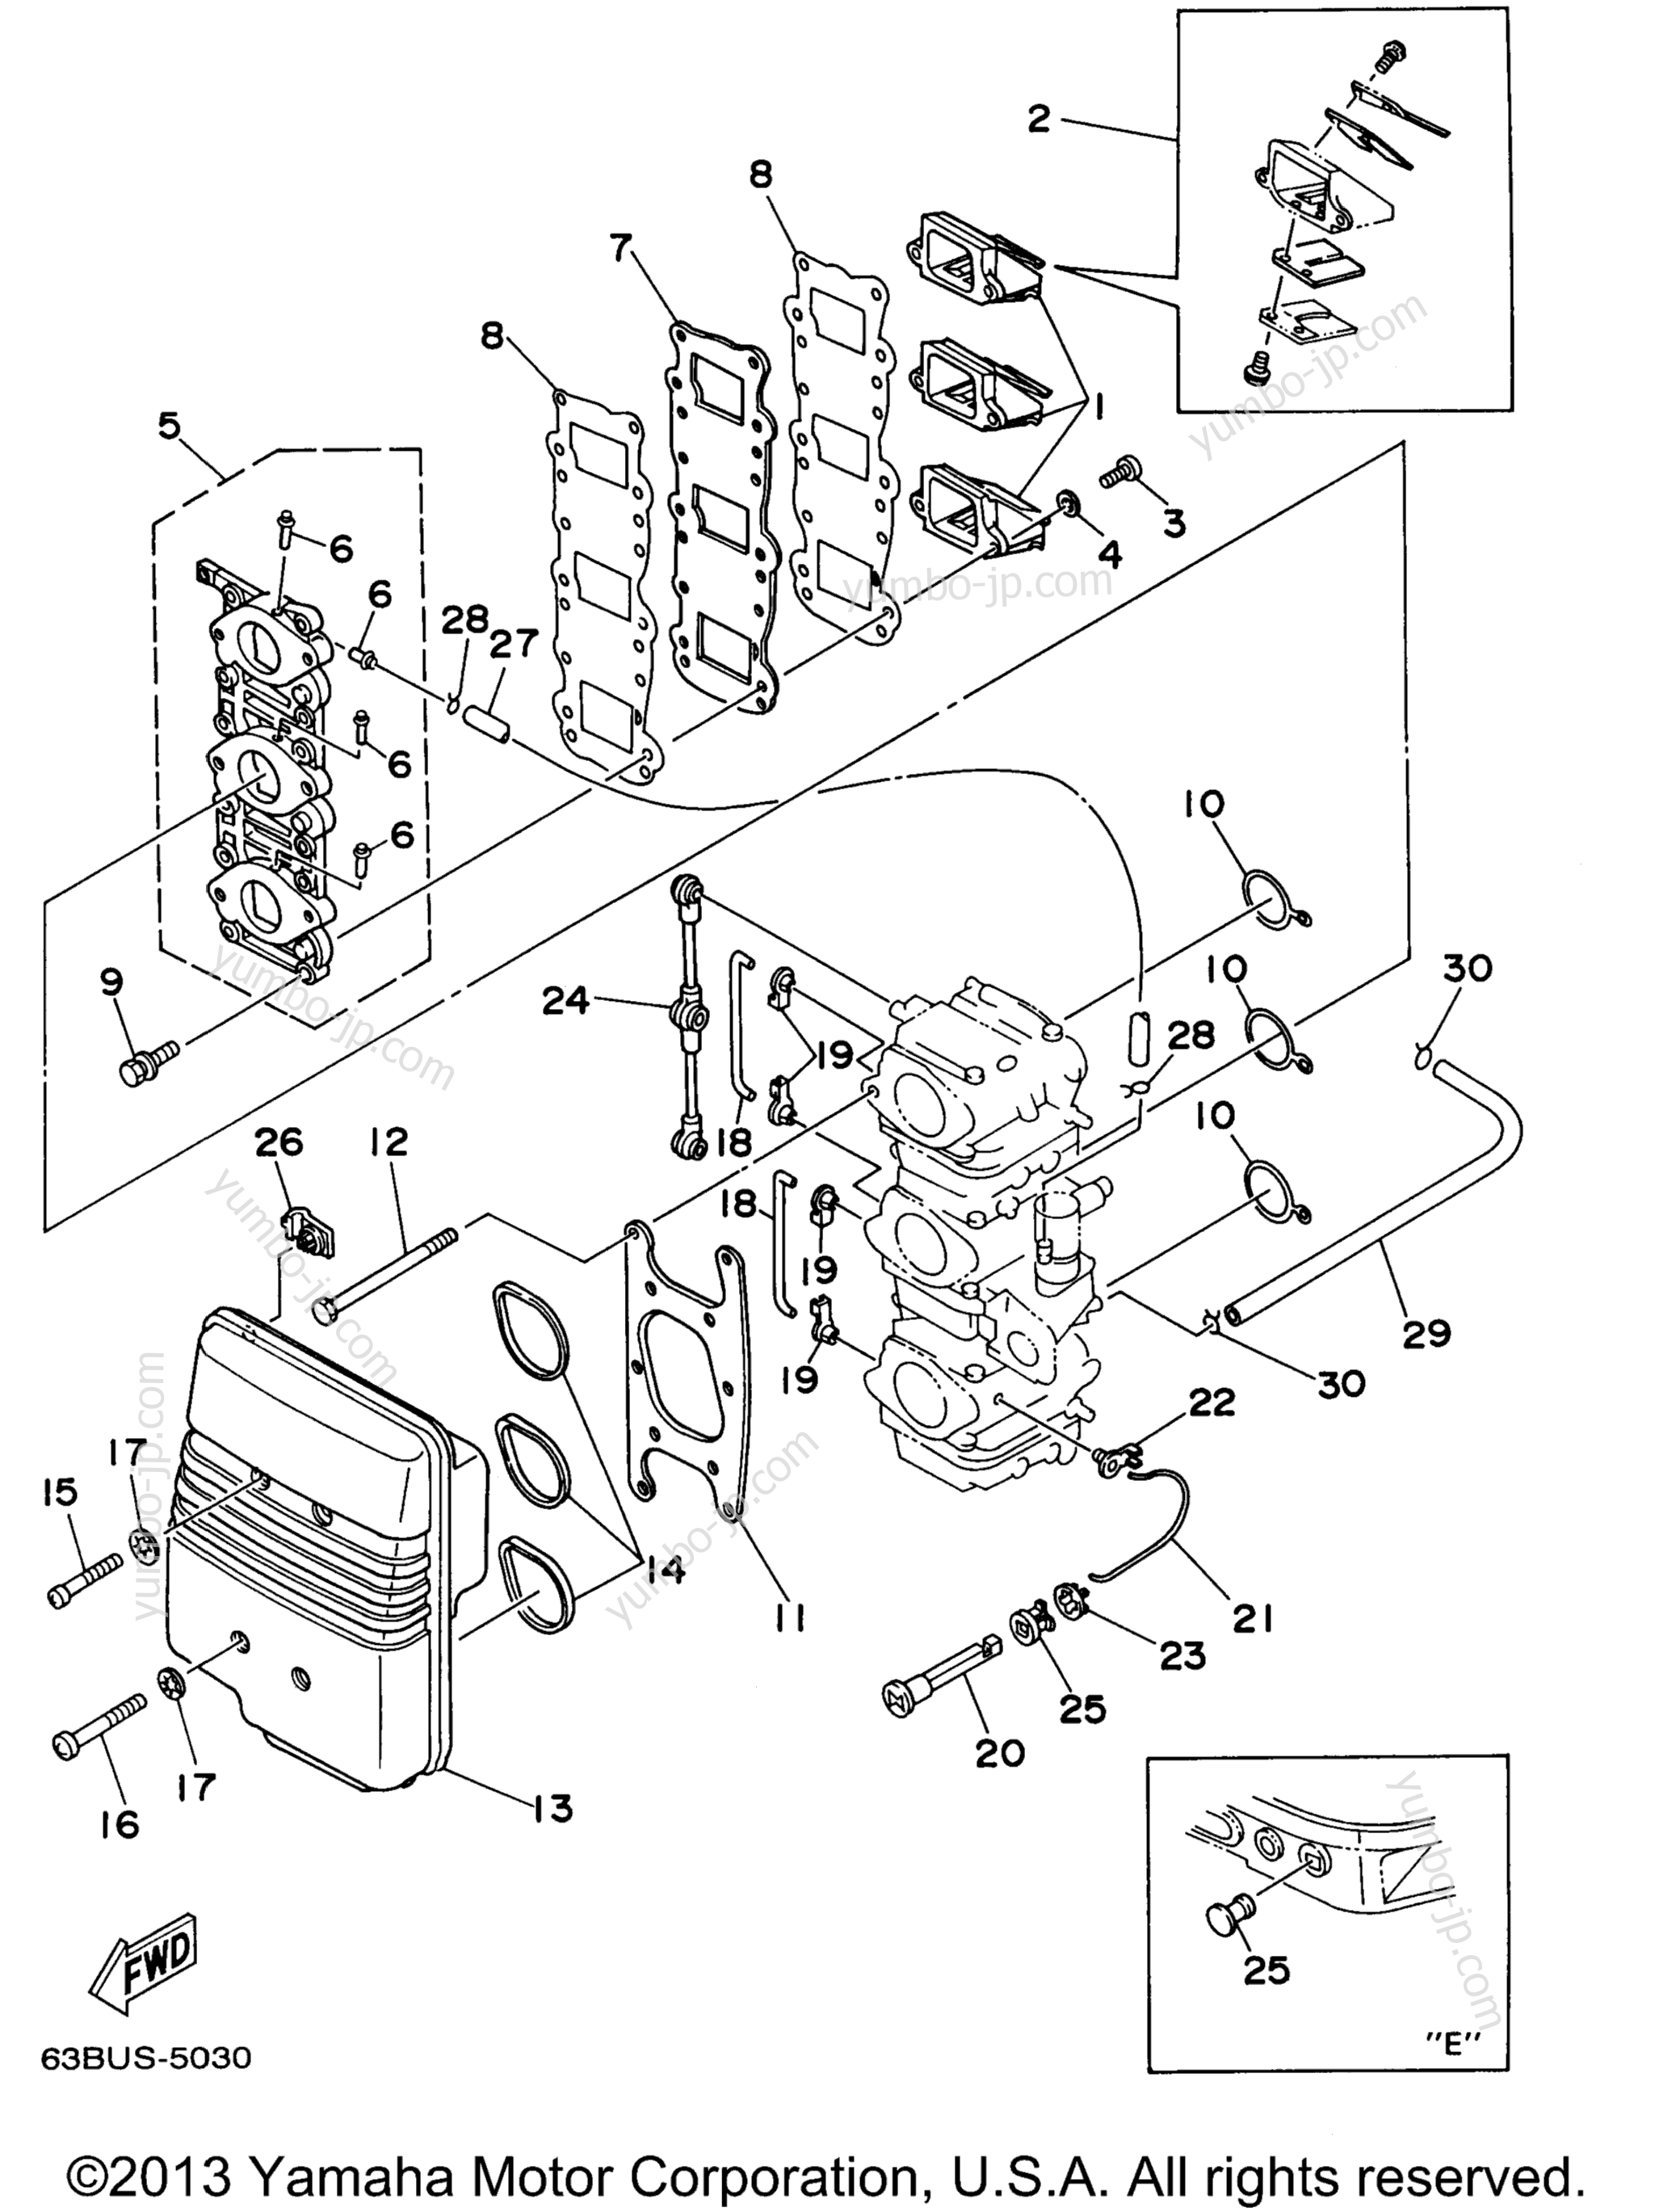 Intake для лодочных моторов YAMAHA P40EJRW_THLW (40TLRW) 1998 г.